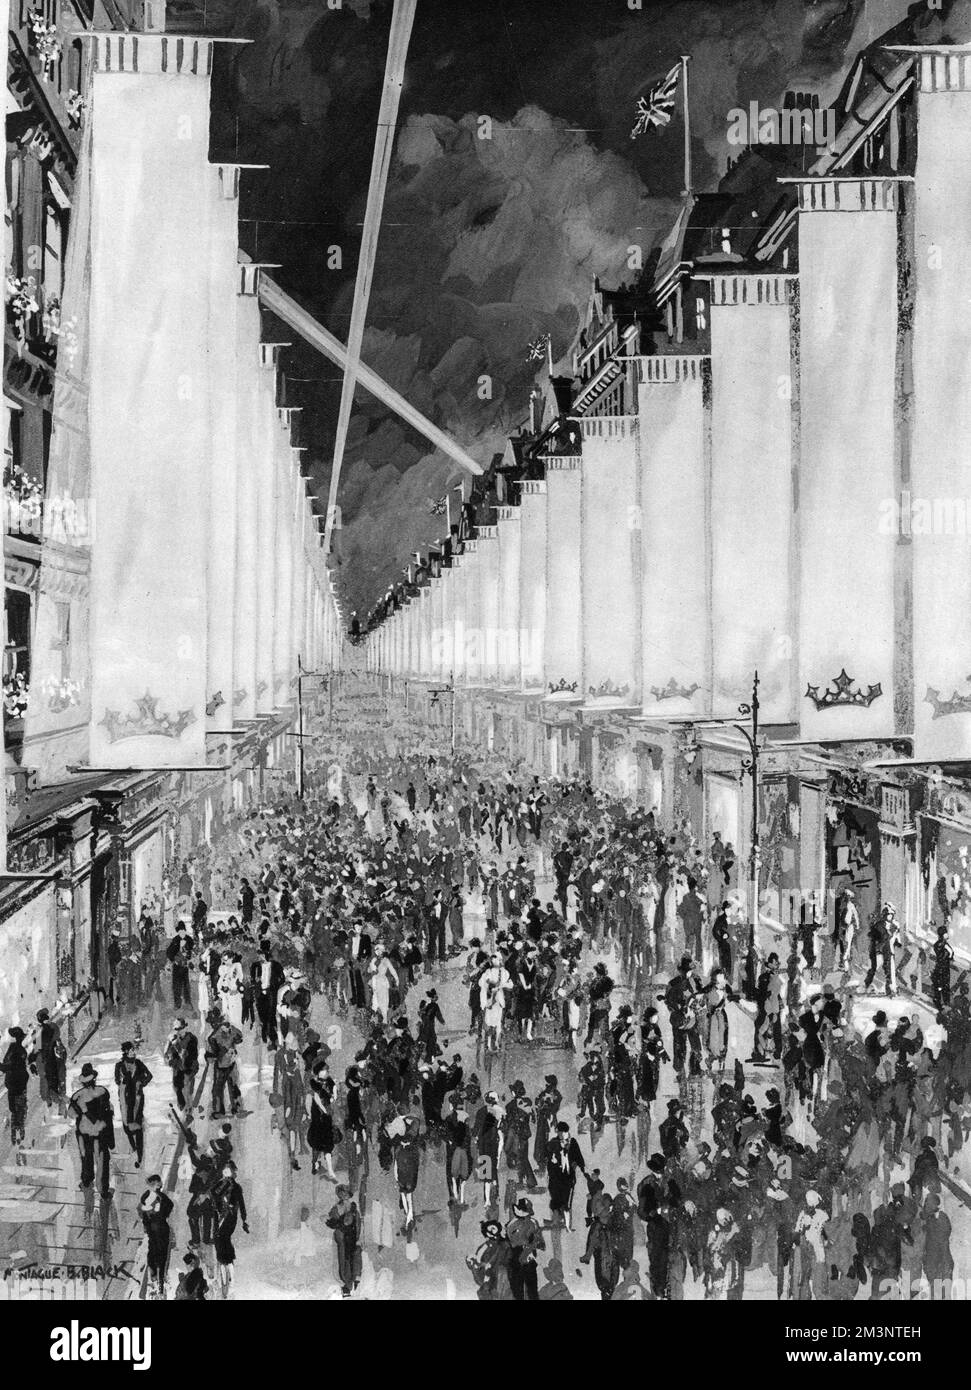 Die Bond Street hing mit weißen Bannern, die zur Feier der Krönung von König George VI. Im Mai 1937 beleuchtet wurden. Die weißen Banner, 30 mal 6 Meter, fielen bis auf 12 Meter vom Gehweg und hatten eine farbige Plantaganet-Krone am Fuß. Datum: 1937 Stockfoto